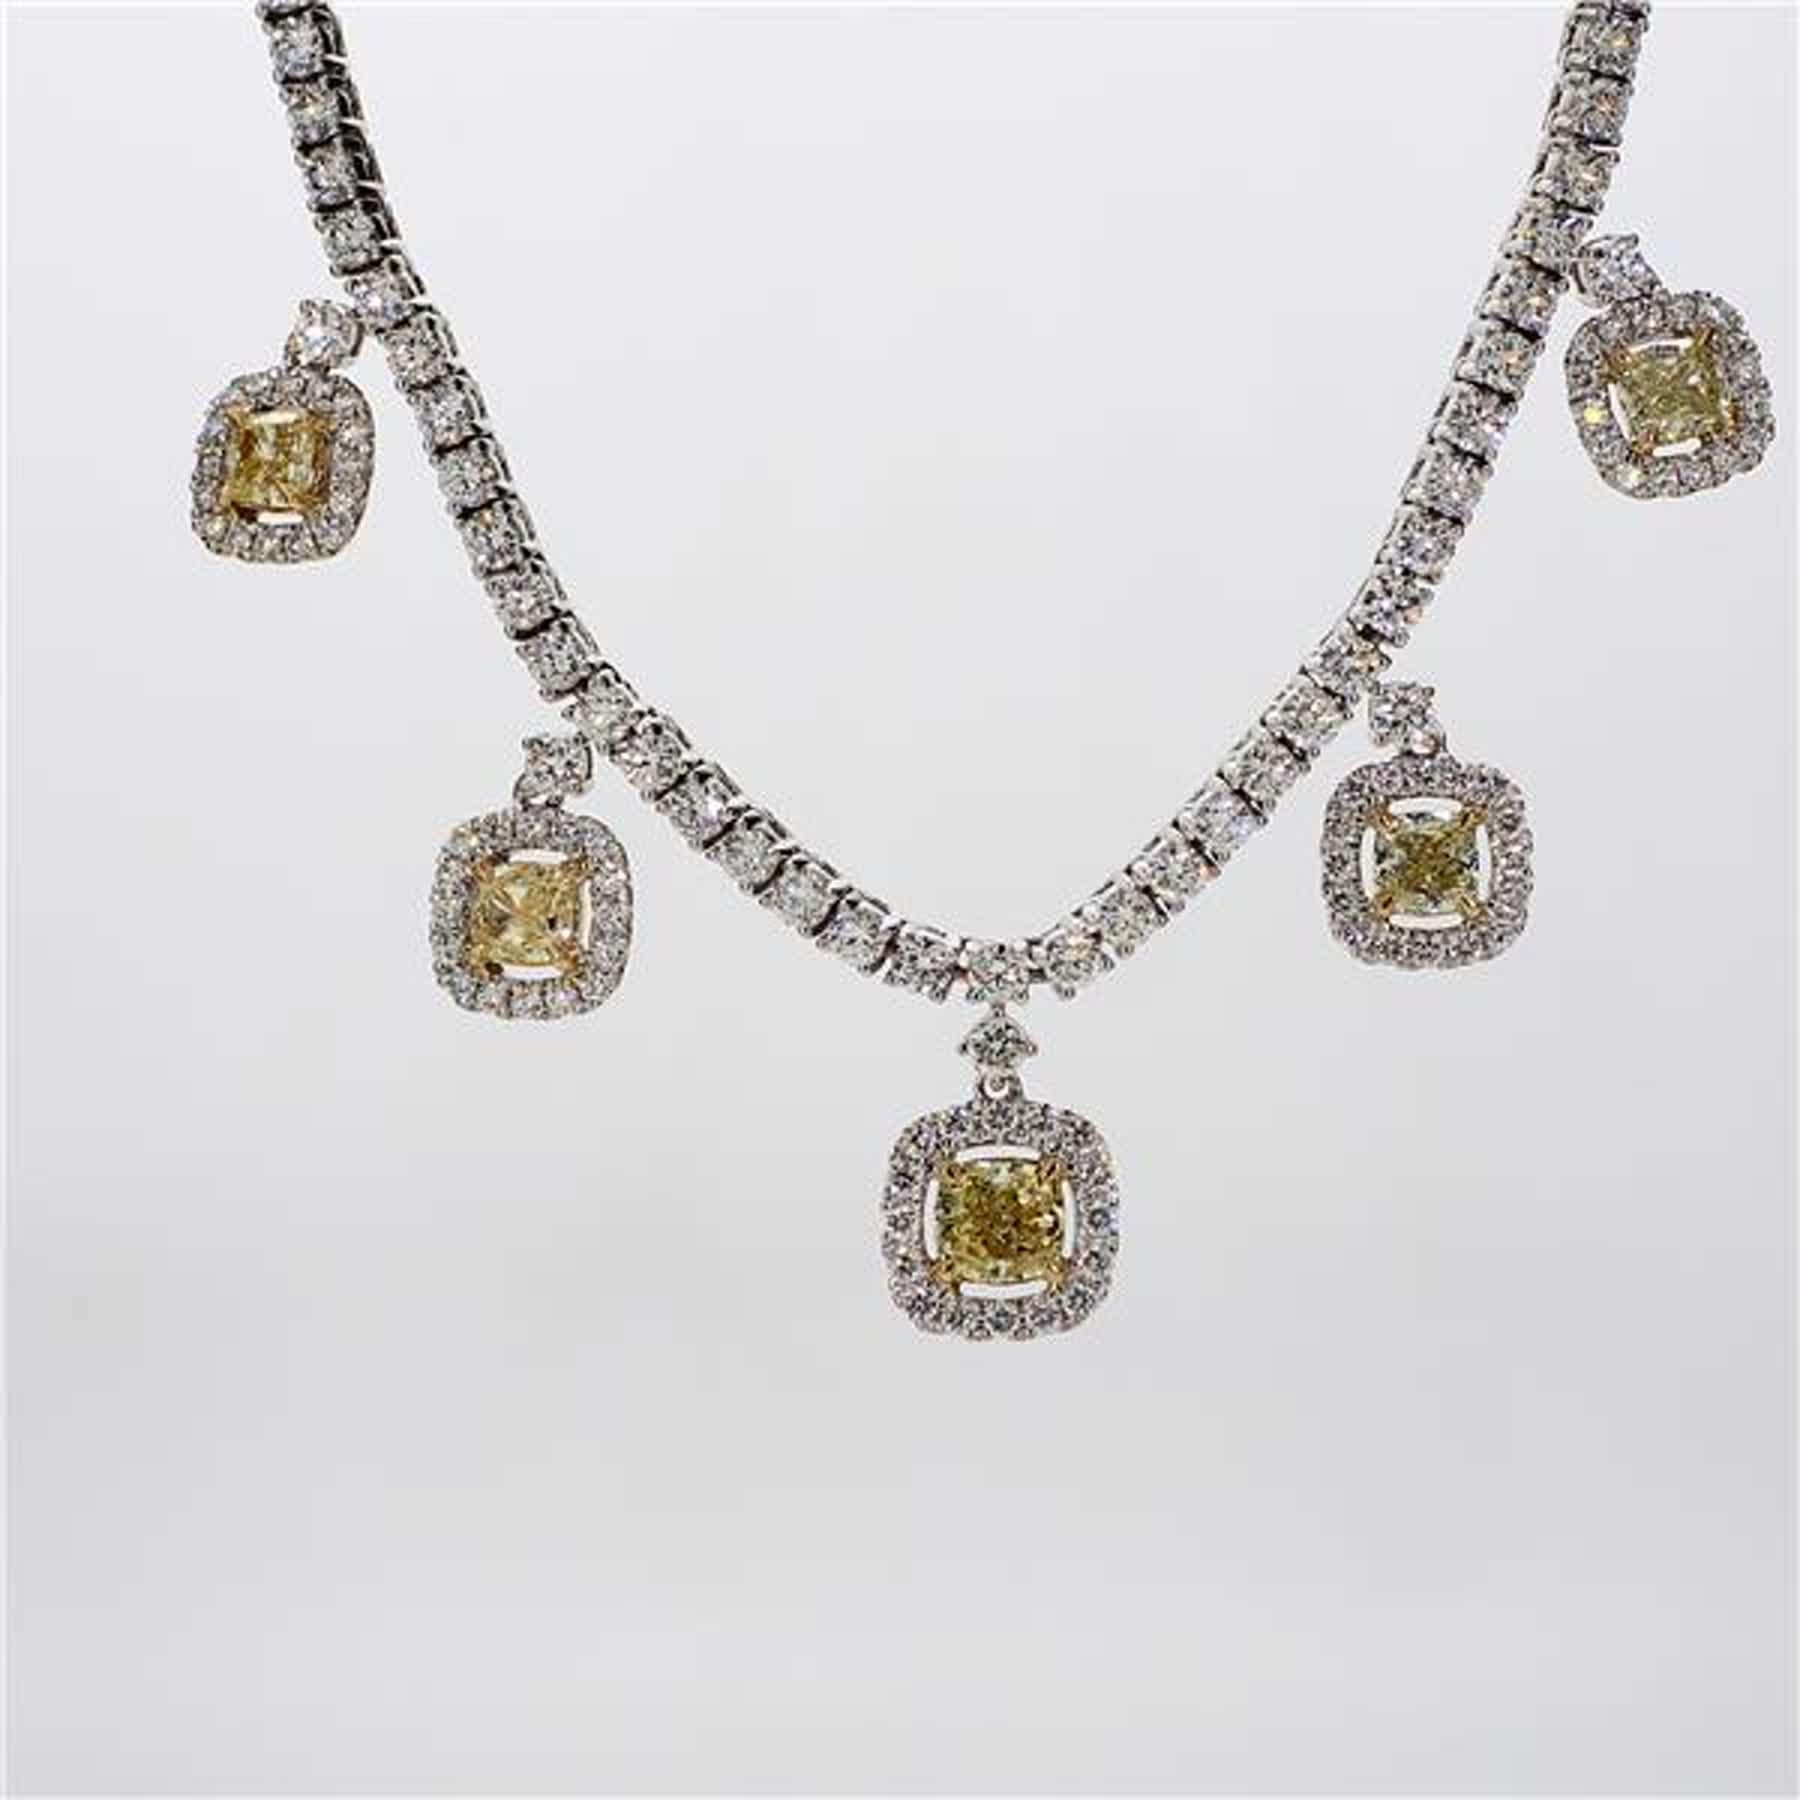 Das klassische Diamant-Halsband von RareGemWorld. Eingefasst in eine wunderschöne Fassung aus 18 Karat Gelb- und Weißgold mit gelben Diamanten im Kissenschliff. Die gelben Diamanten sind von kleinen runden weißen Naturdiamanten sowie von Diamanten